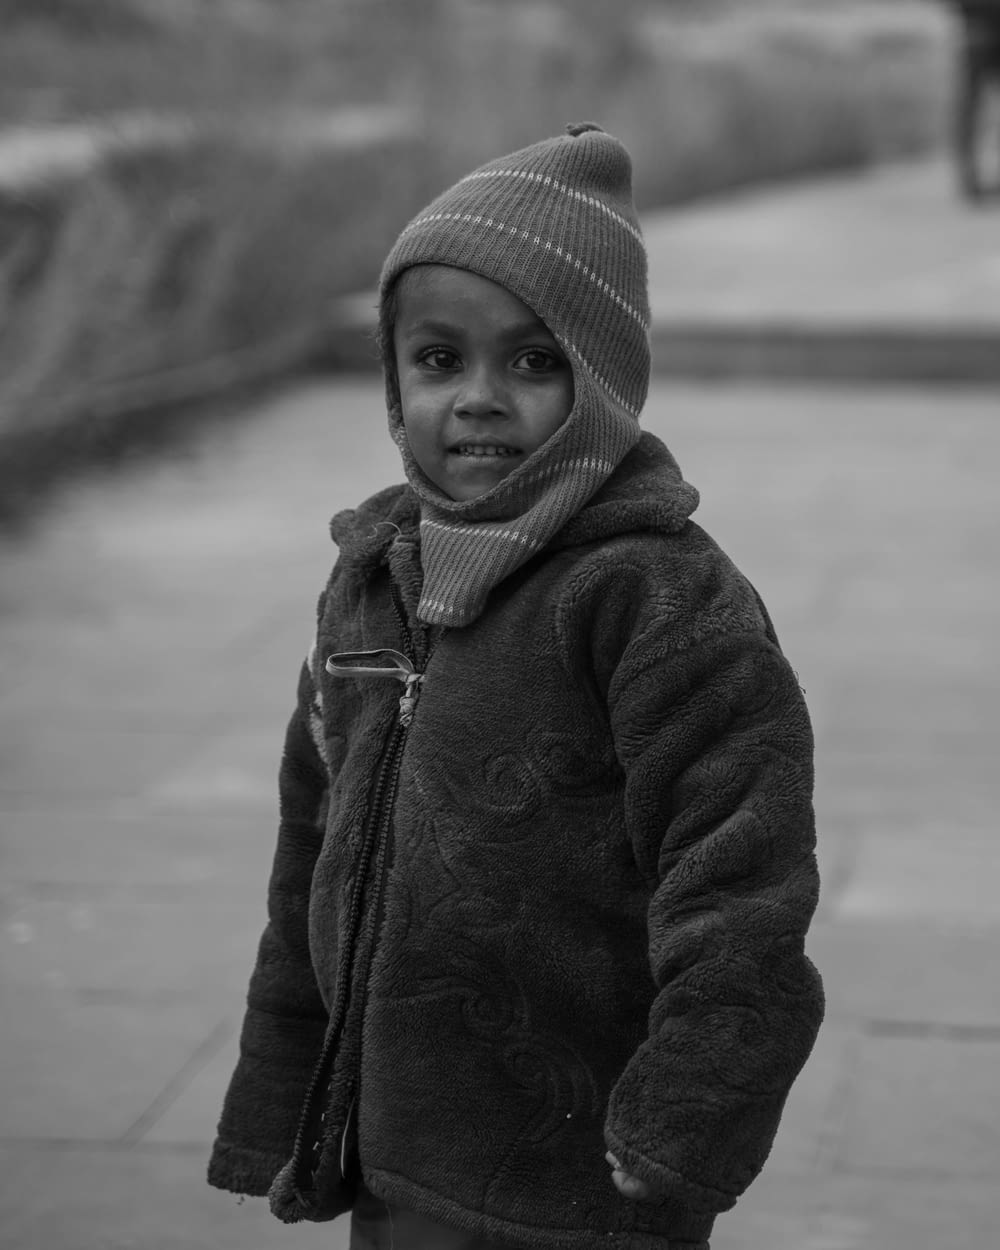 a little boy standing on a sidewalk wearing a hat